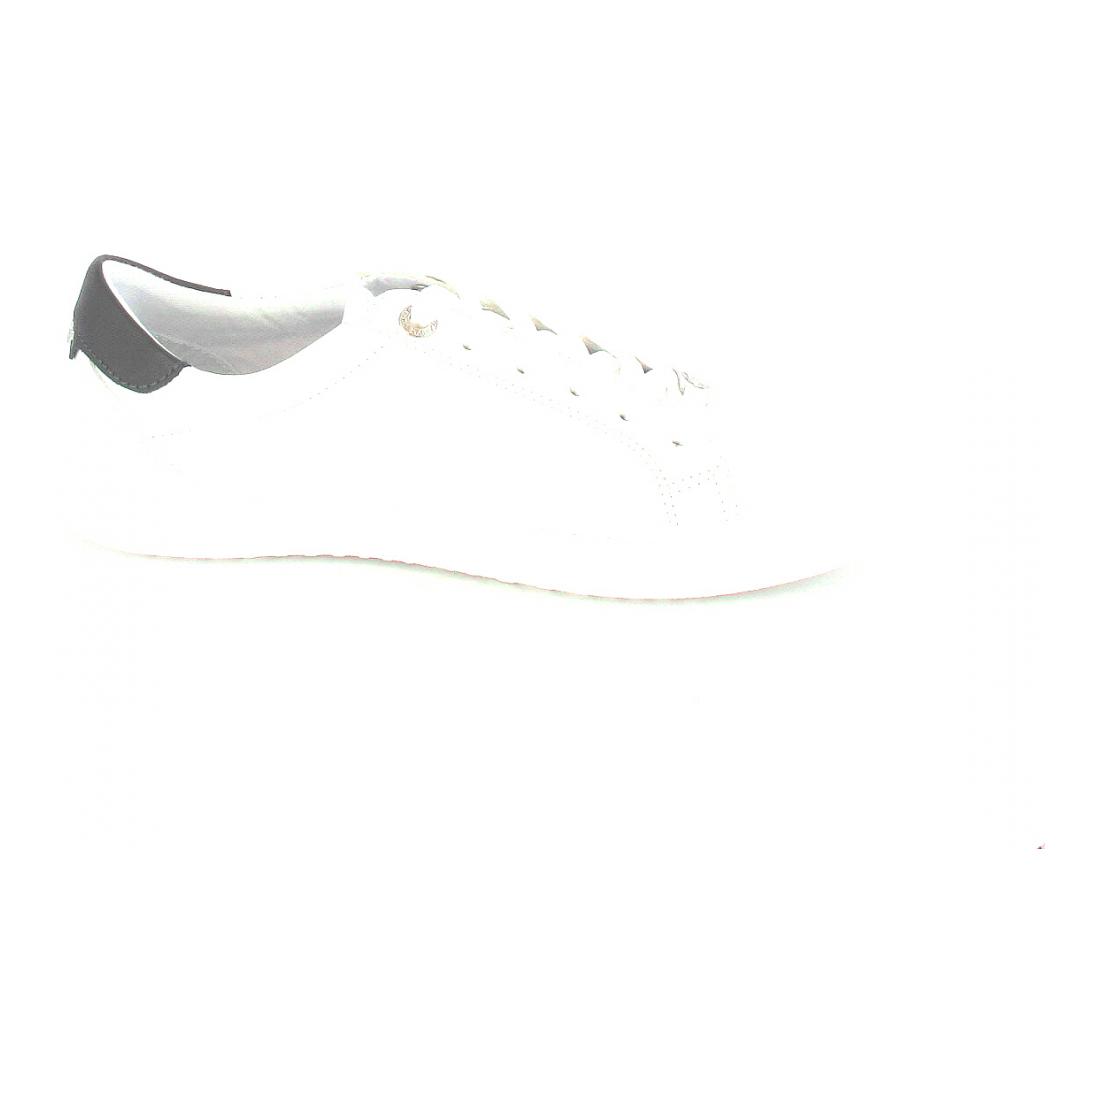 Tom Tailor Sneaker white